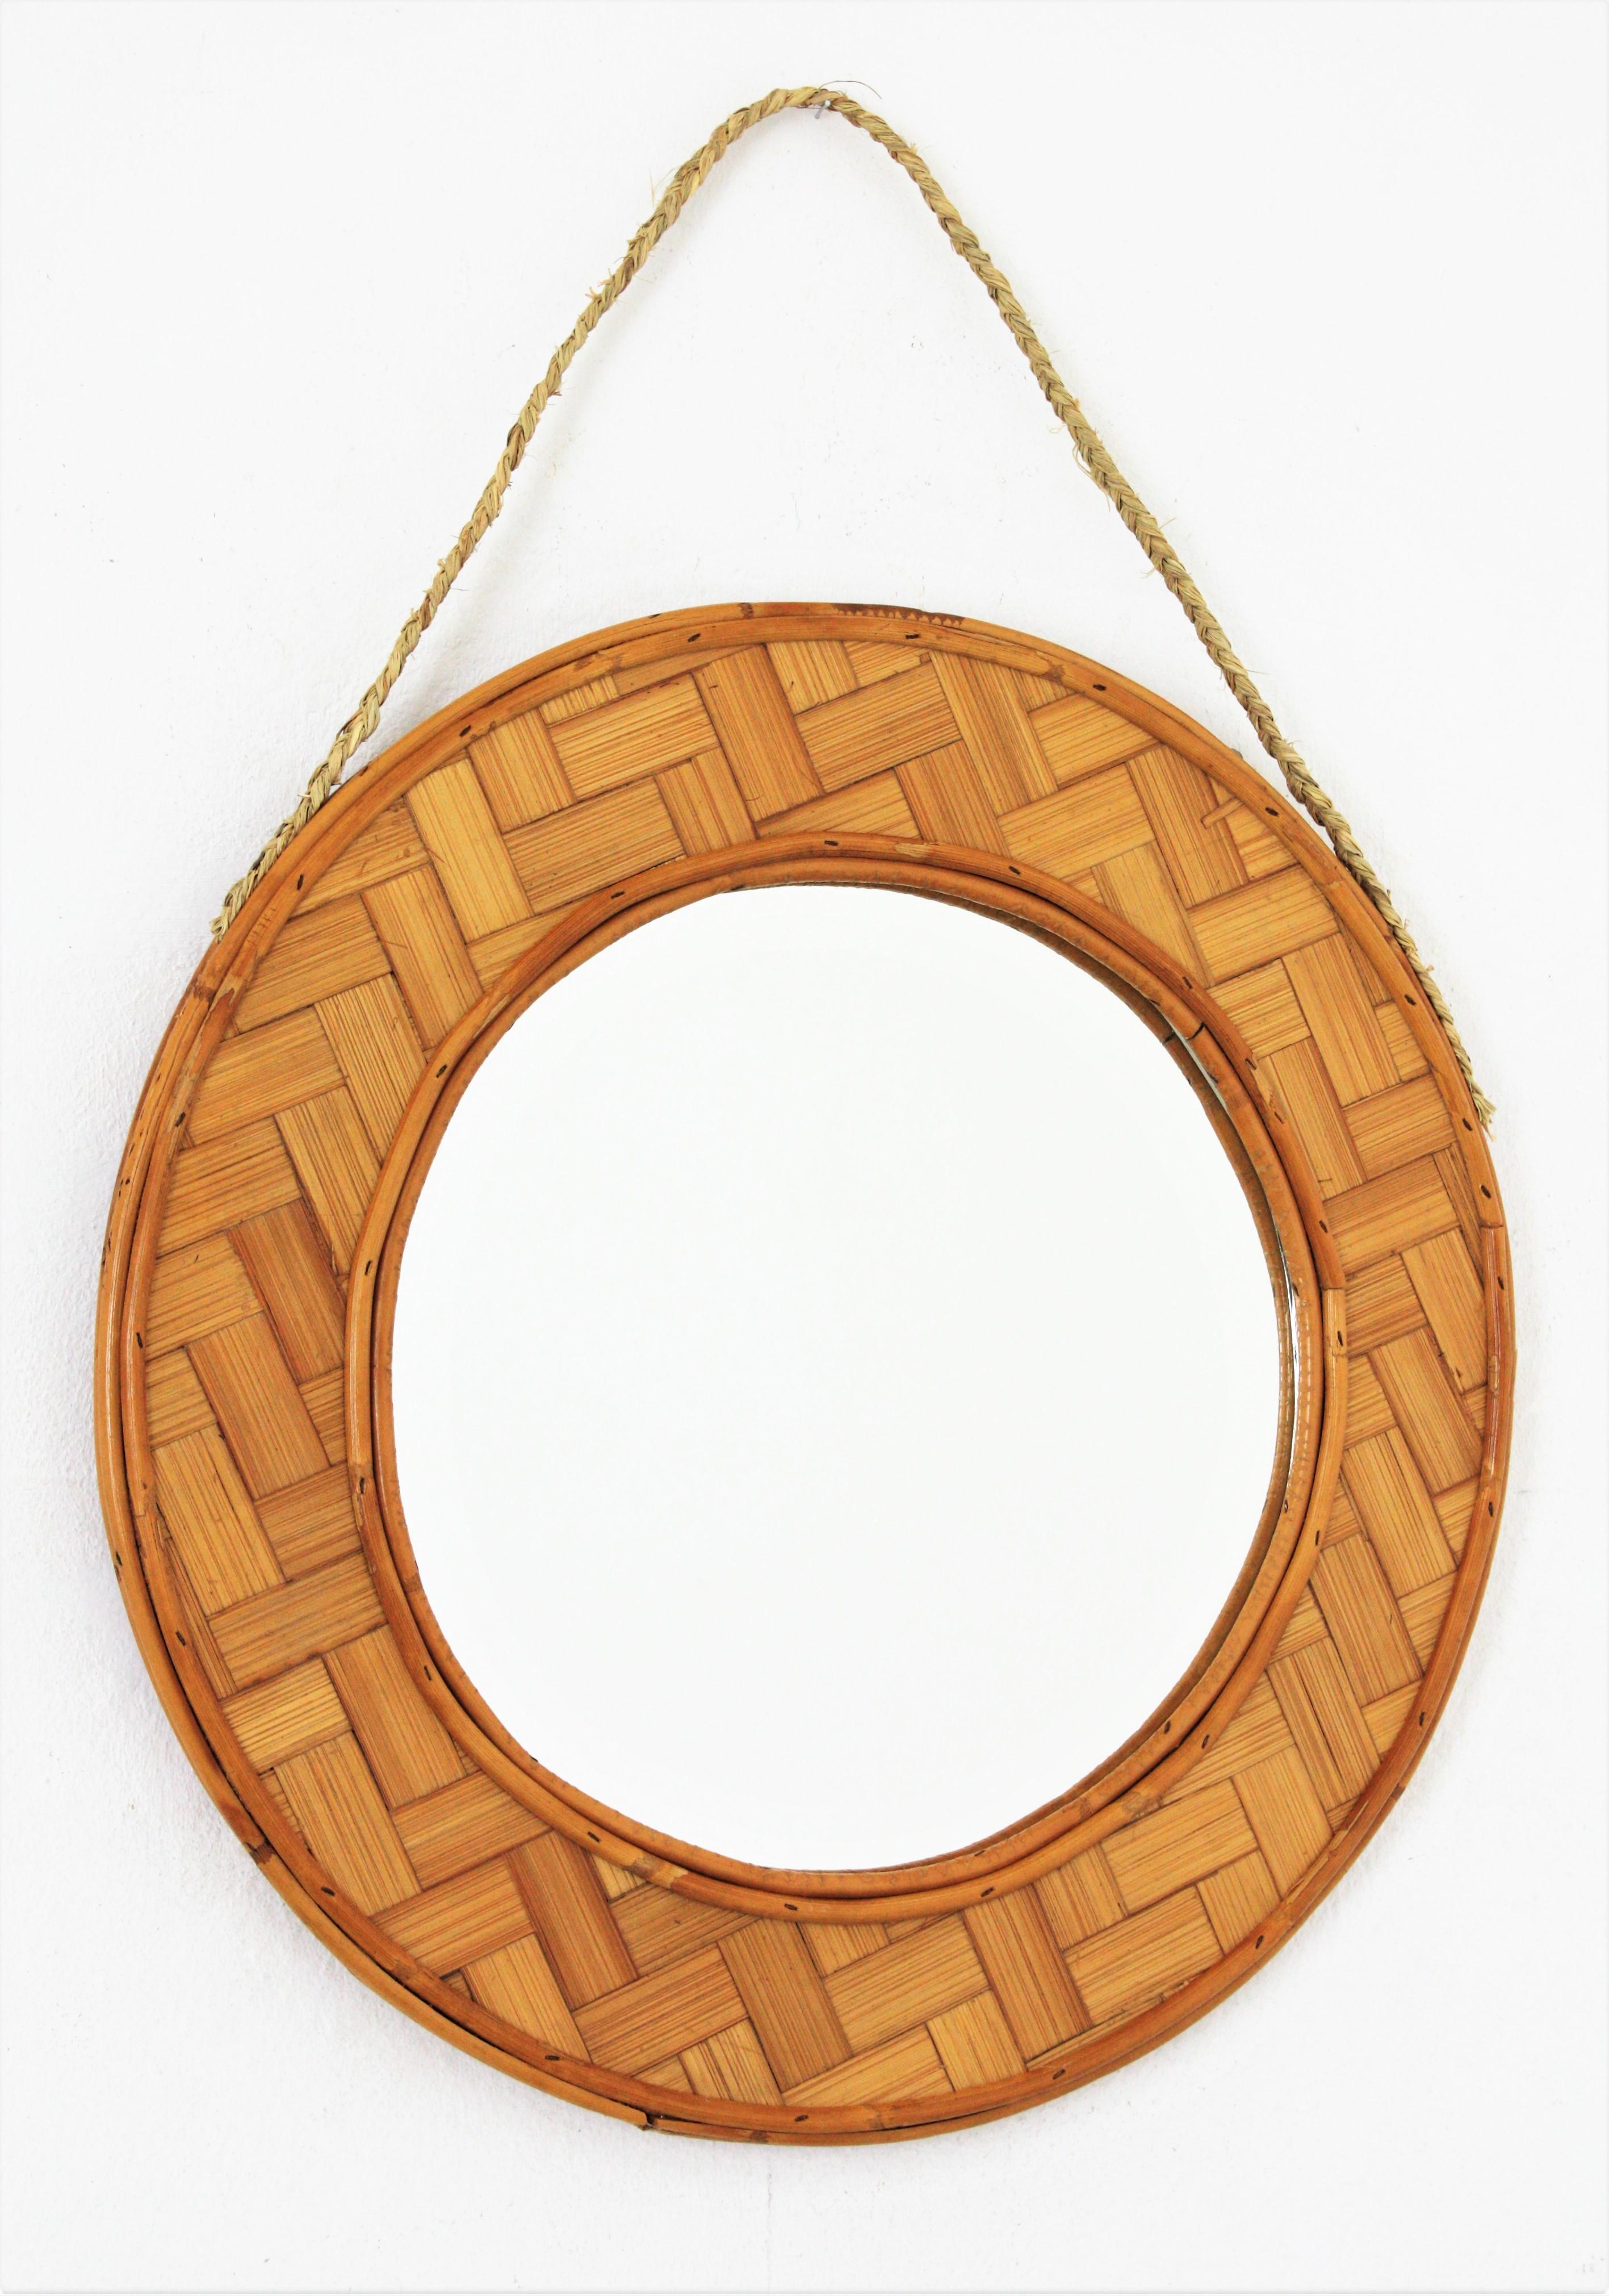 Miroir suspendu en bambou et rotin tressé de style Tiki espagnol, 1960s
Miroir circulaire en rotin et feuilles de bambou tressées, suspendu à une corde d'alfa. 
Ce joli miroir circulaire suspendu présente un cadre avec un entrelacs de bambou tressé